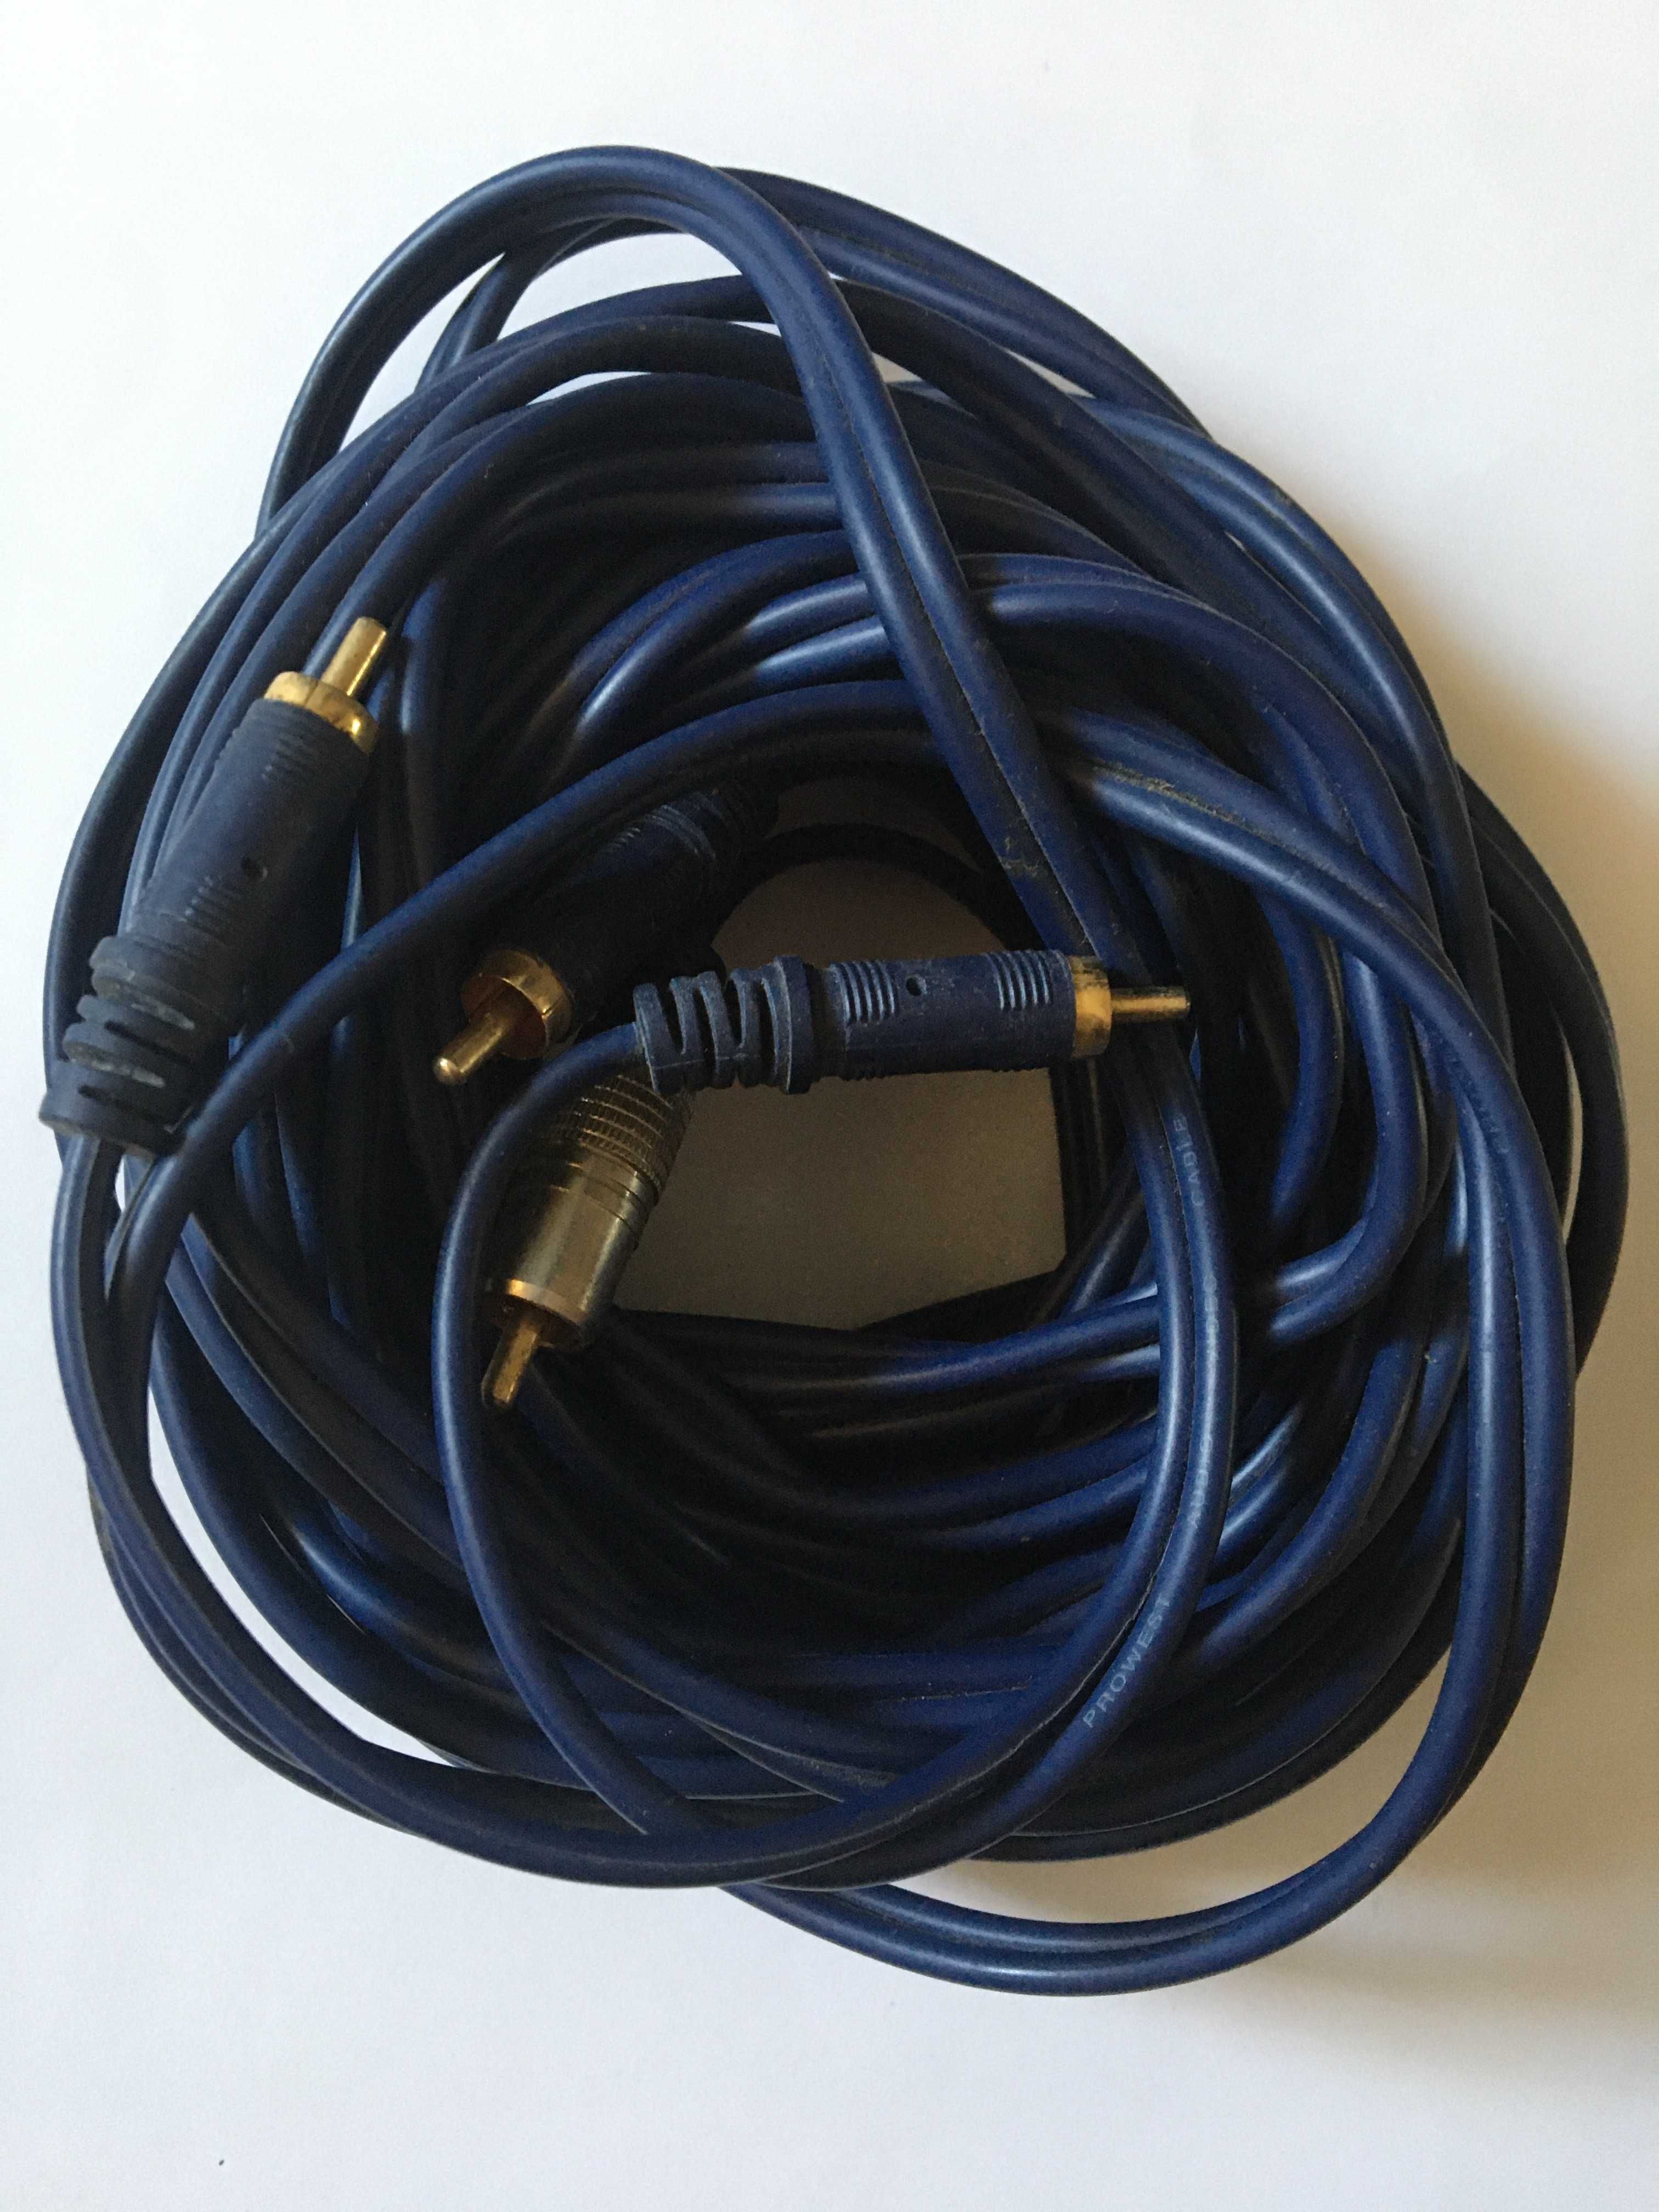 Стерео Аудио Видео кабель ProWest провест шнур провод 10м